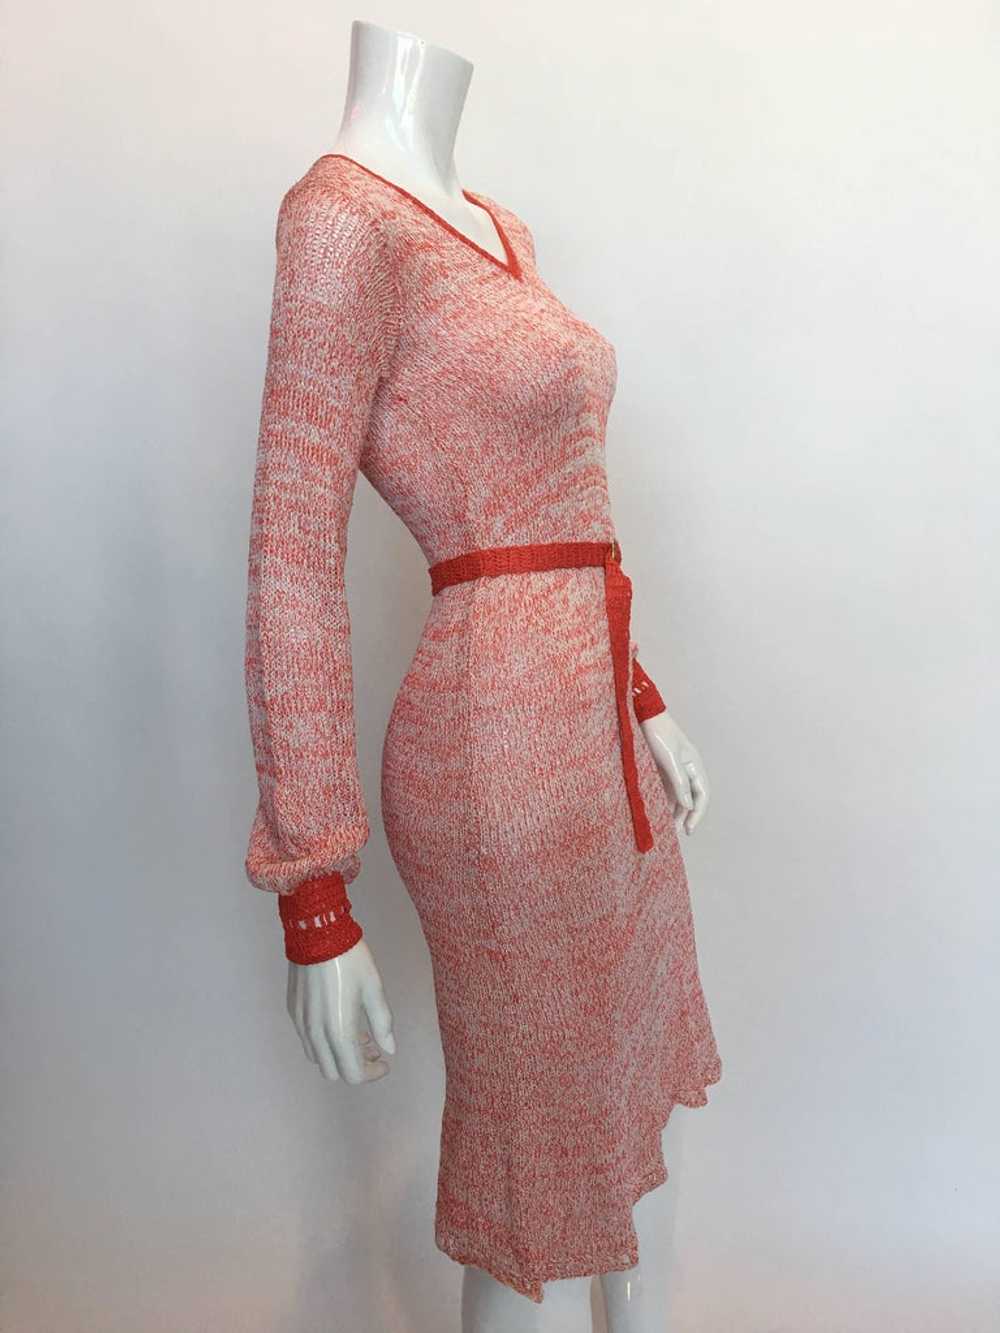 Helga Howie 1970's Knit Space Dye Dress - image 7